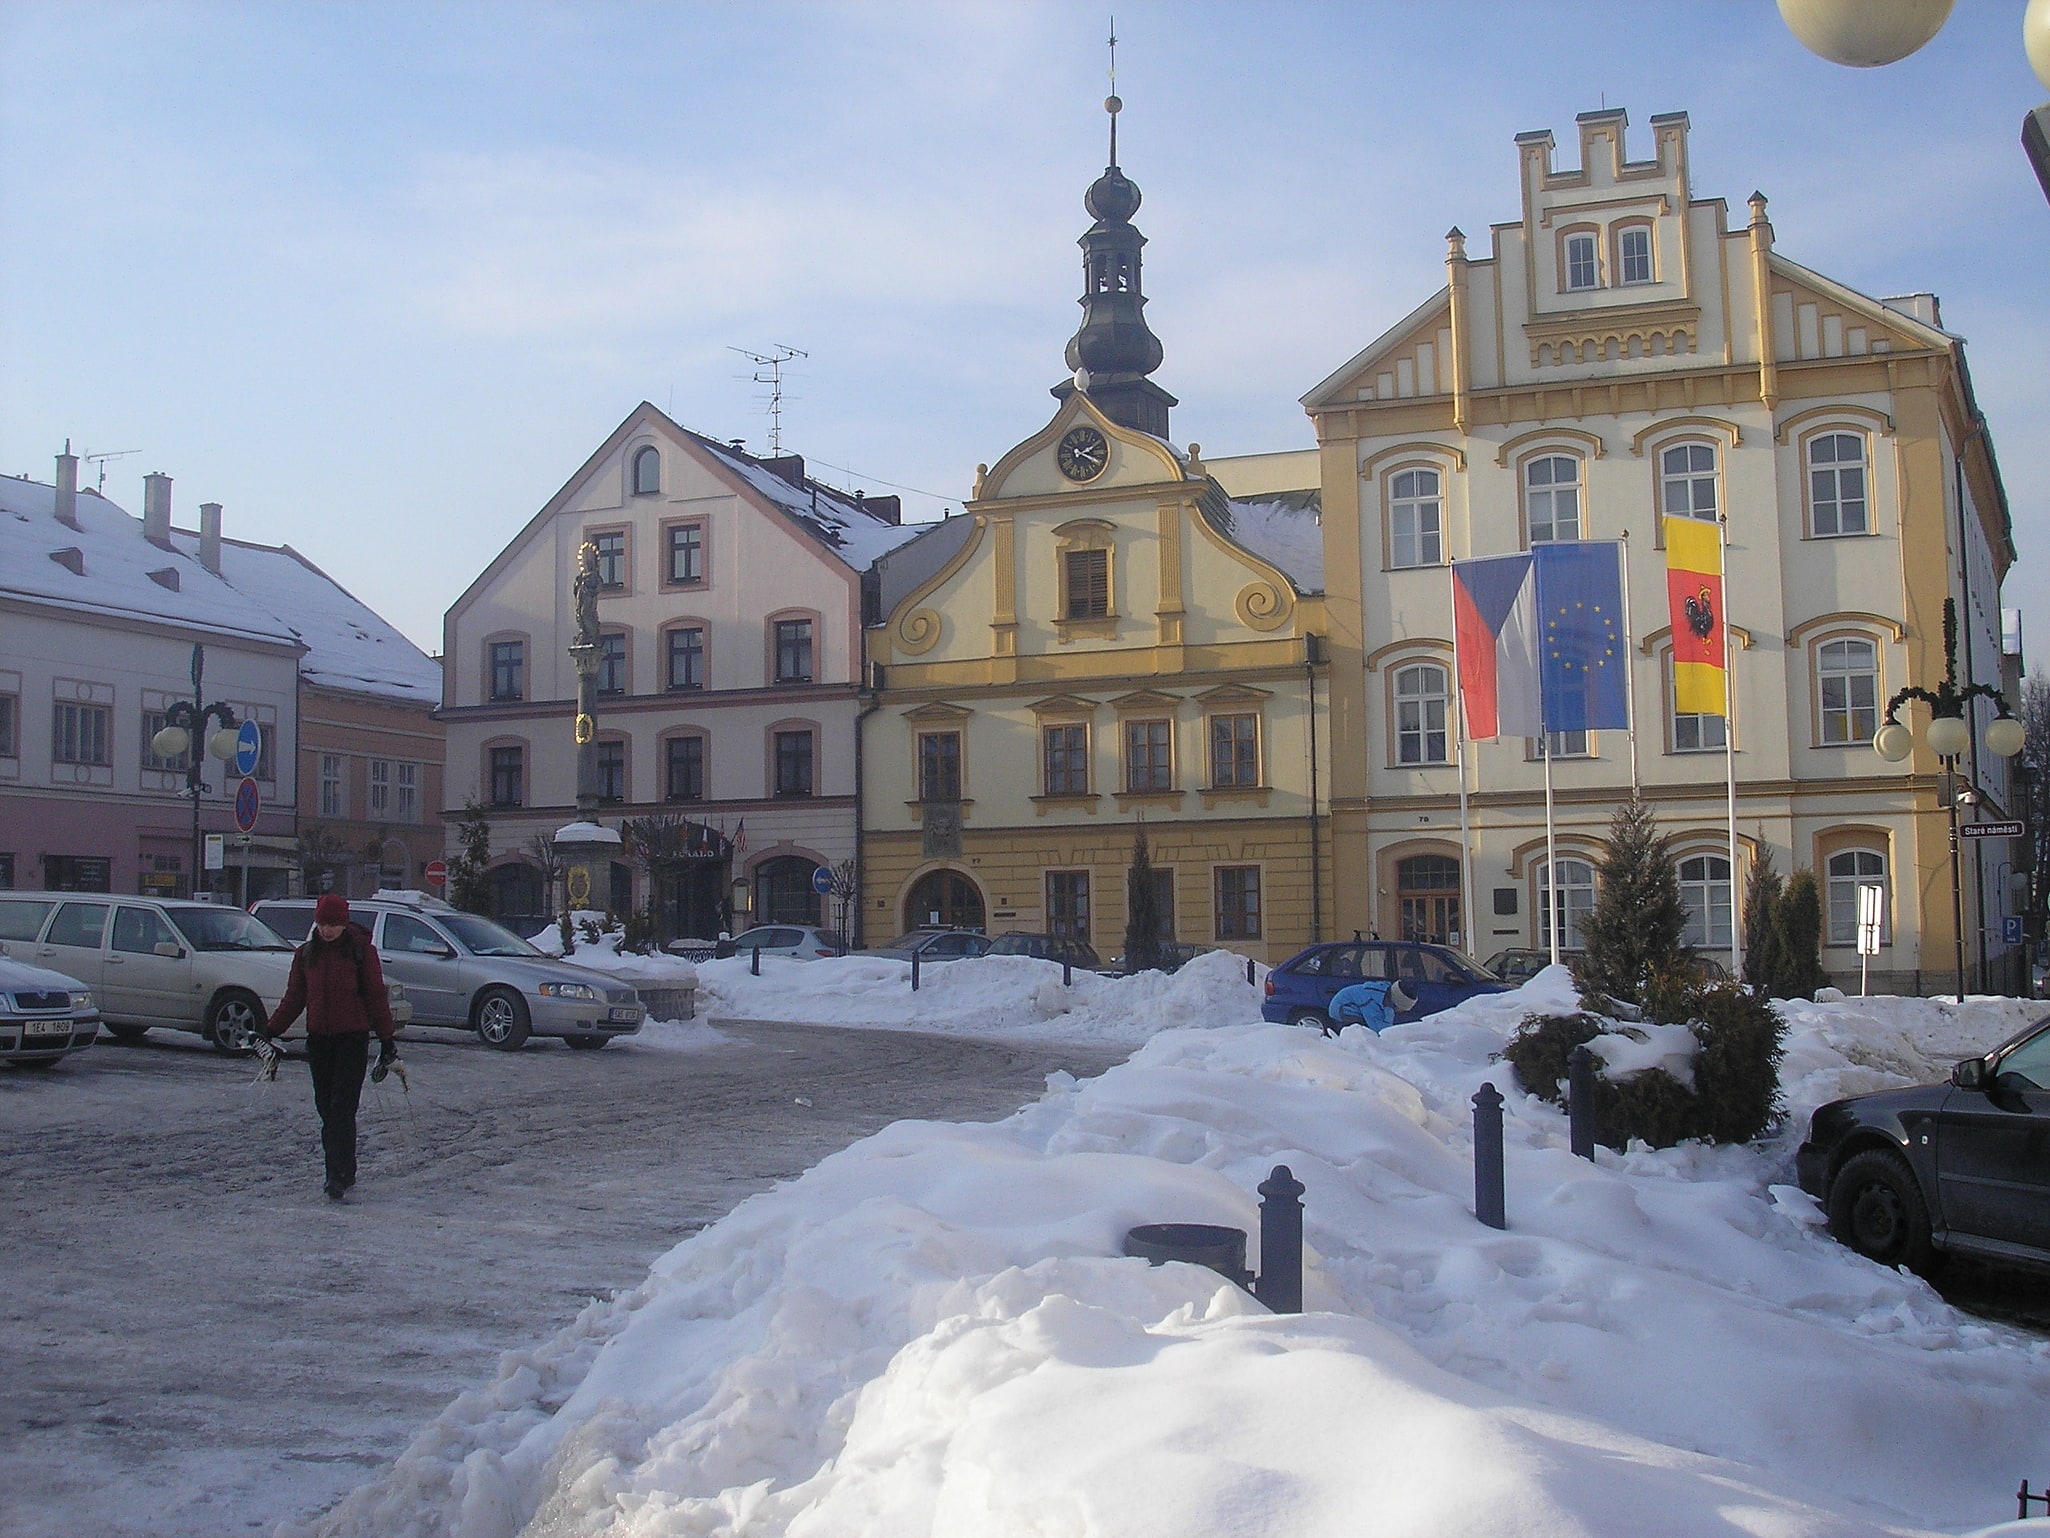 Česká Třebová, Czech Republic